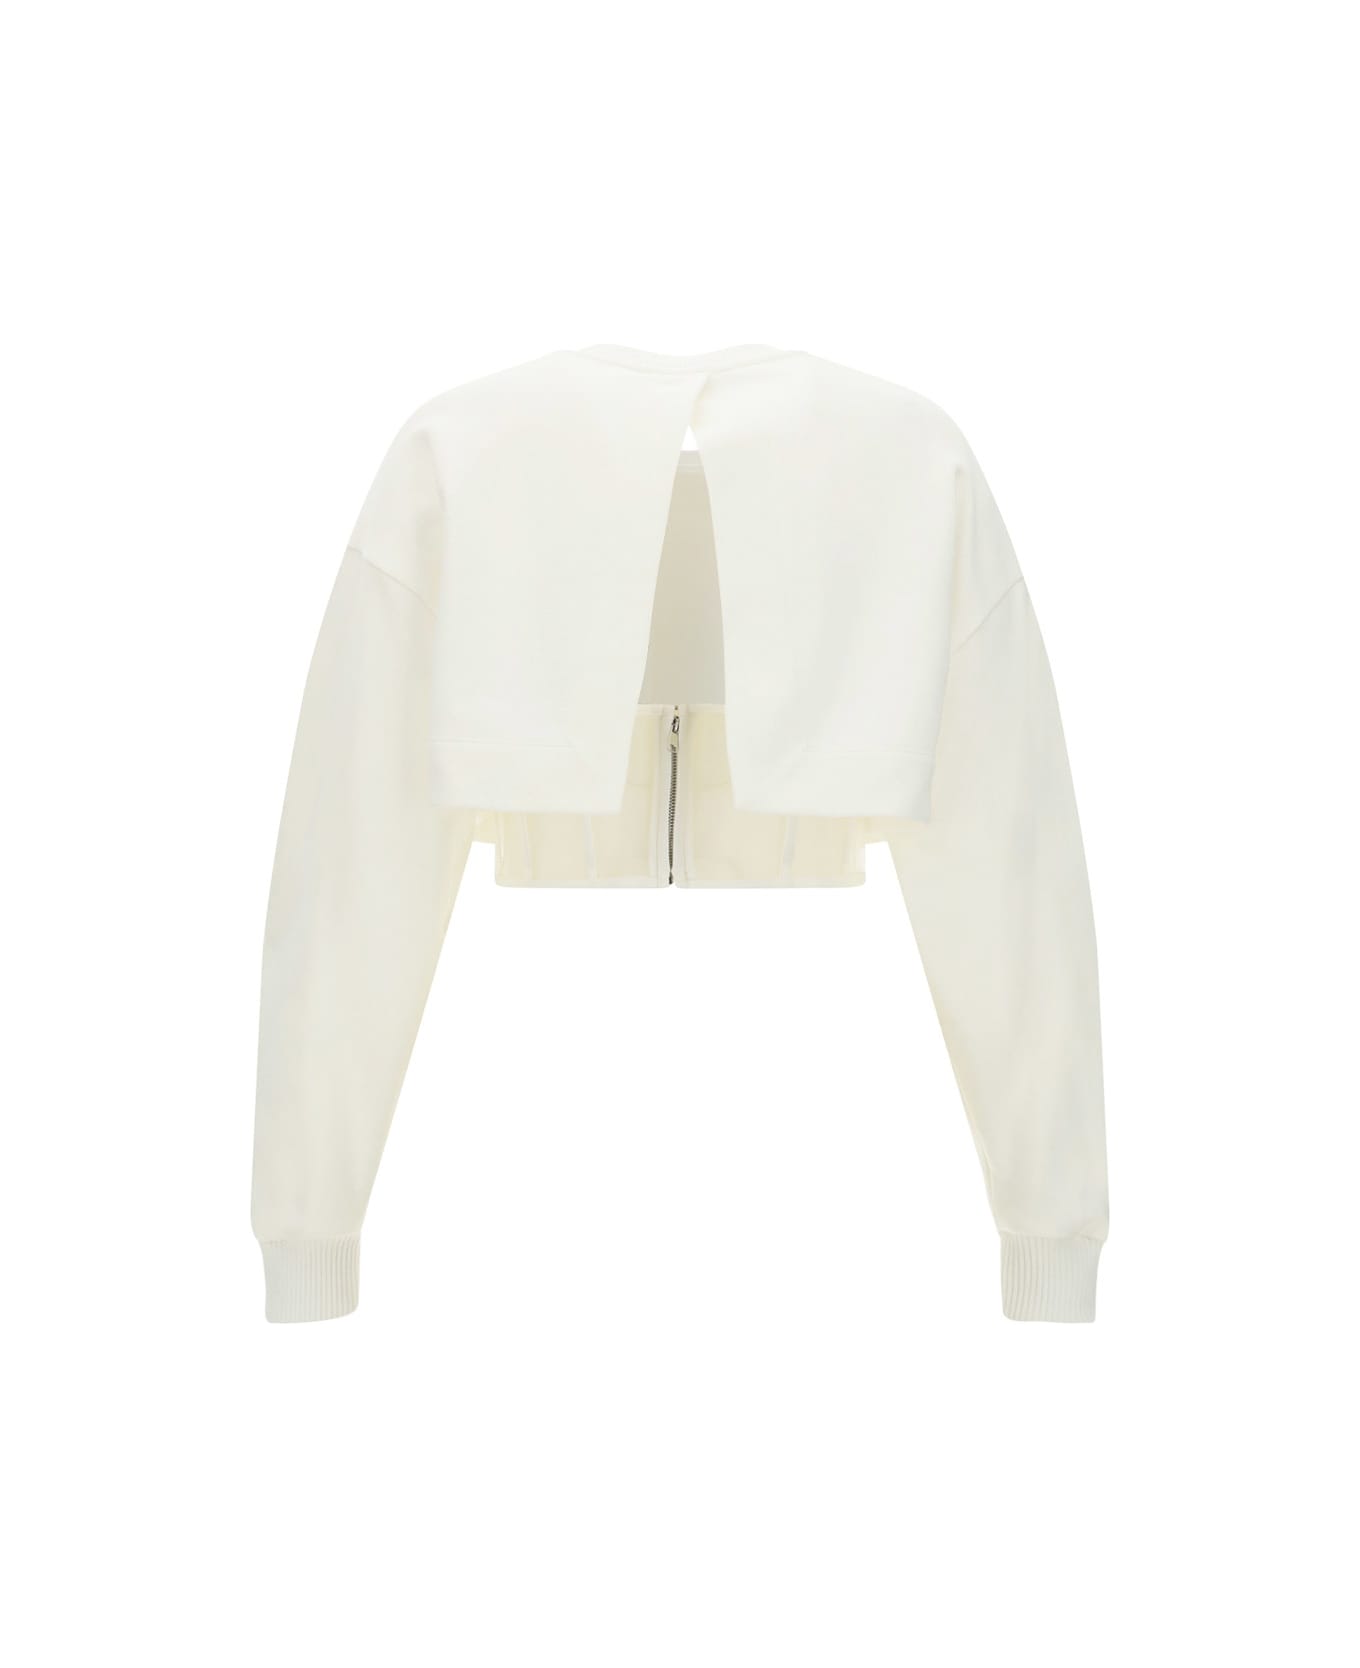 Alexander McQueen Cropped Corset Sweatshirt - Ivory